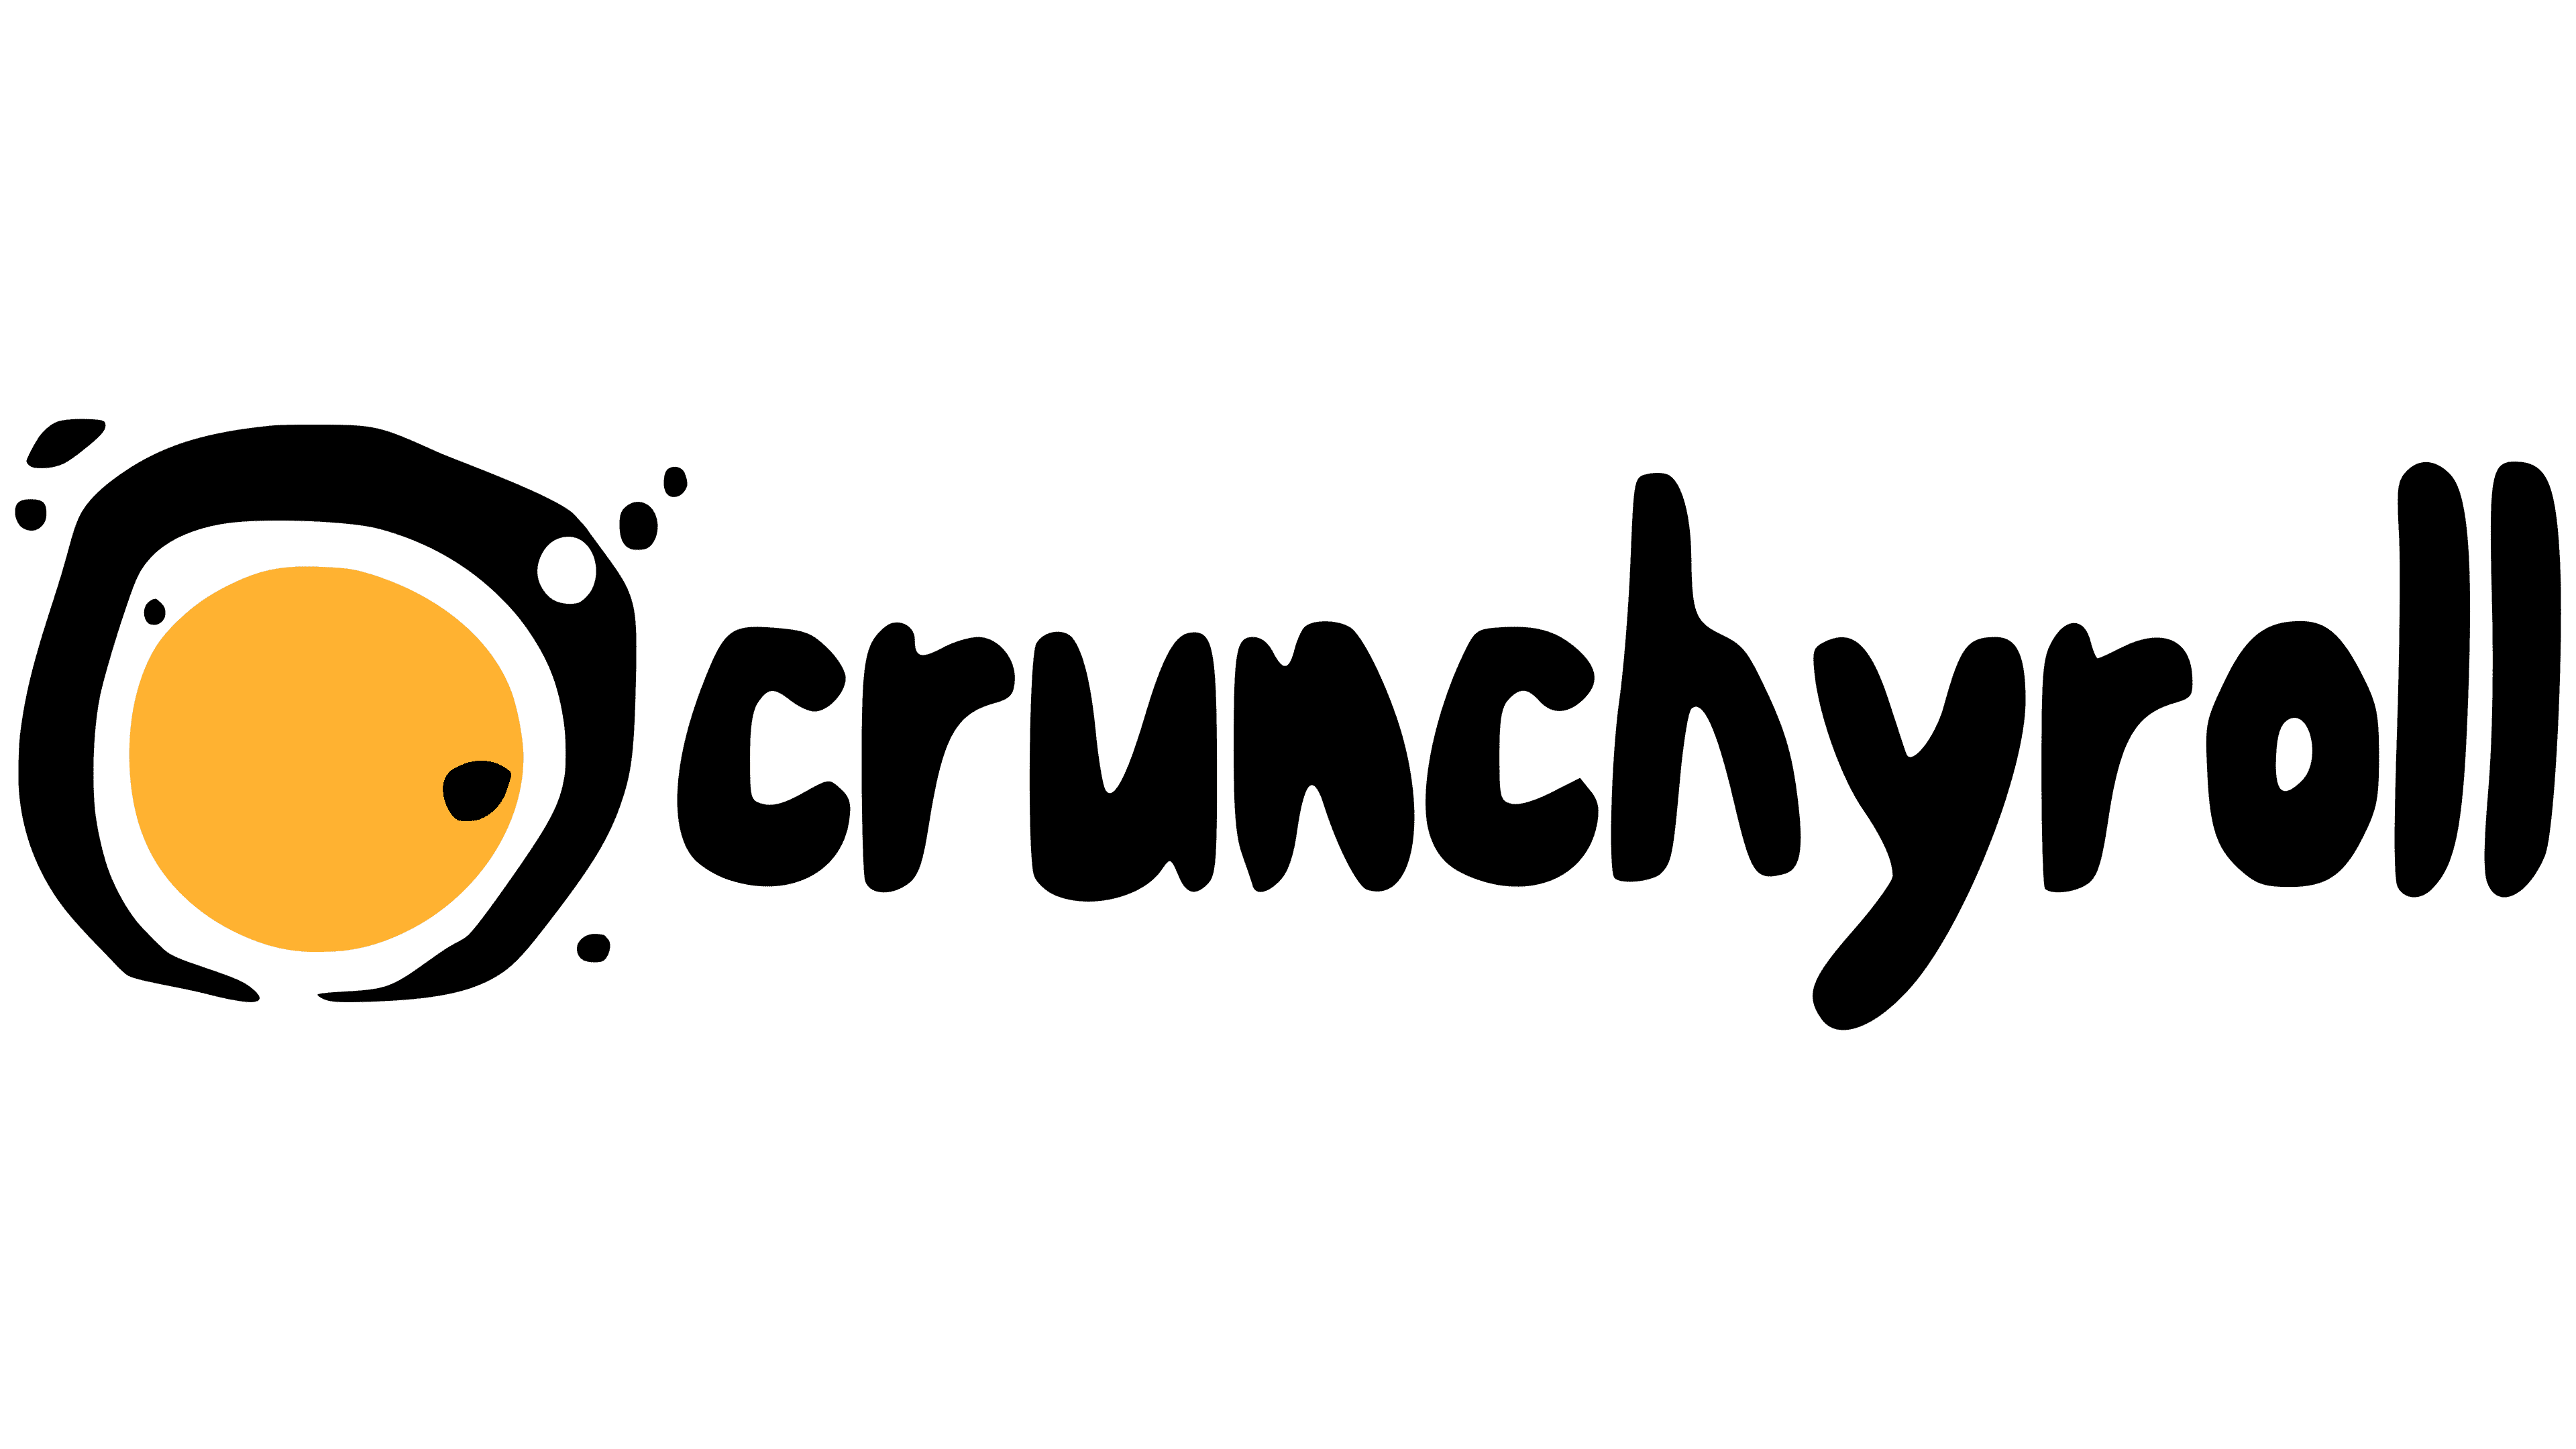 Crunchyroll png images